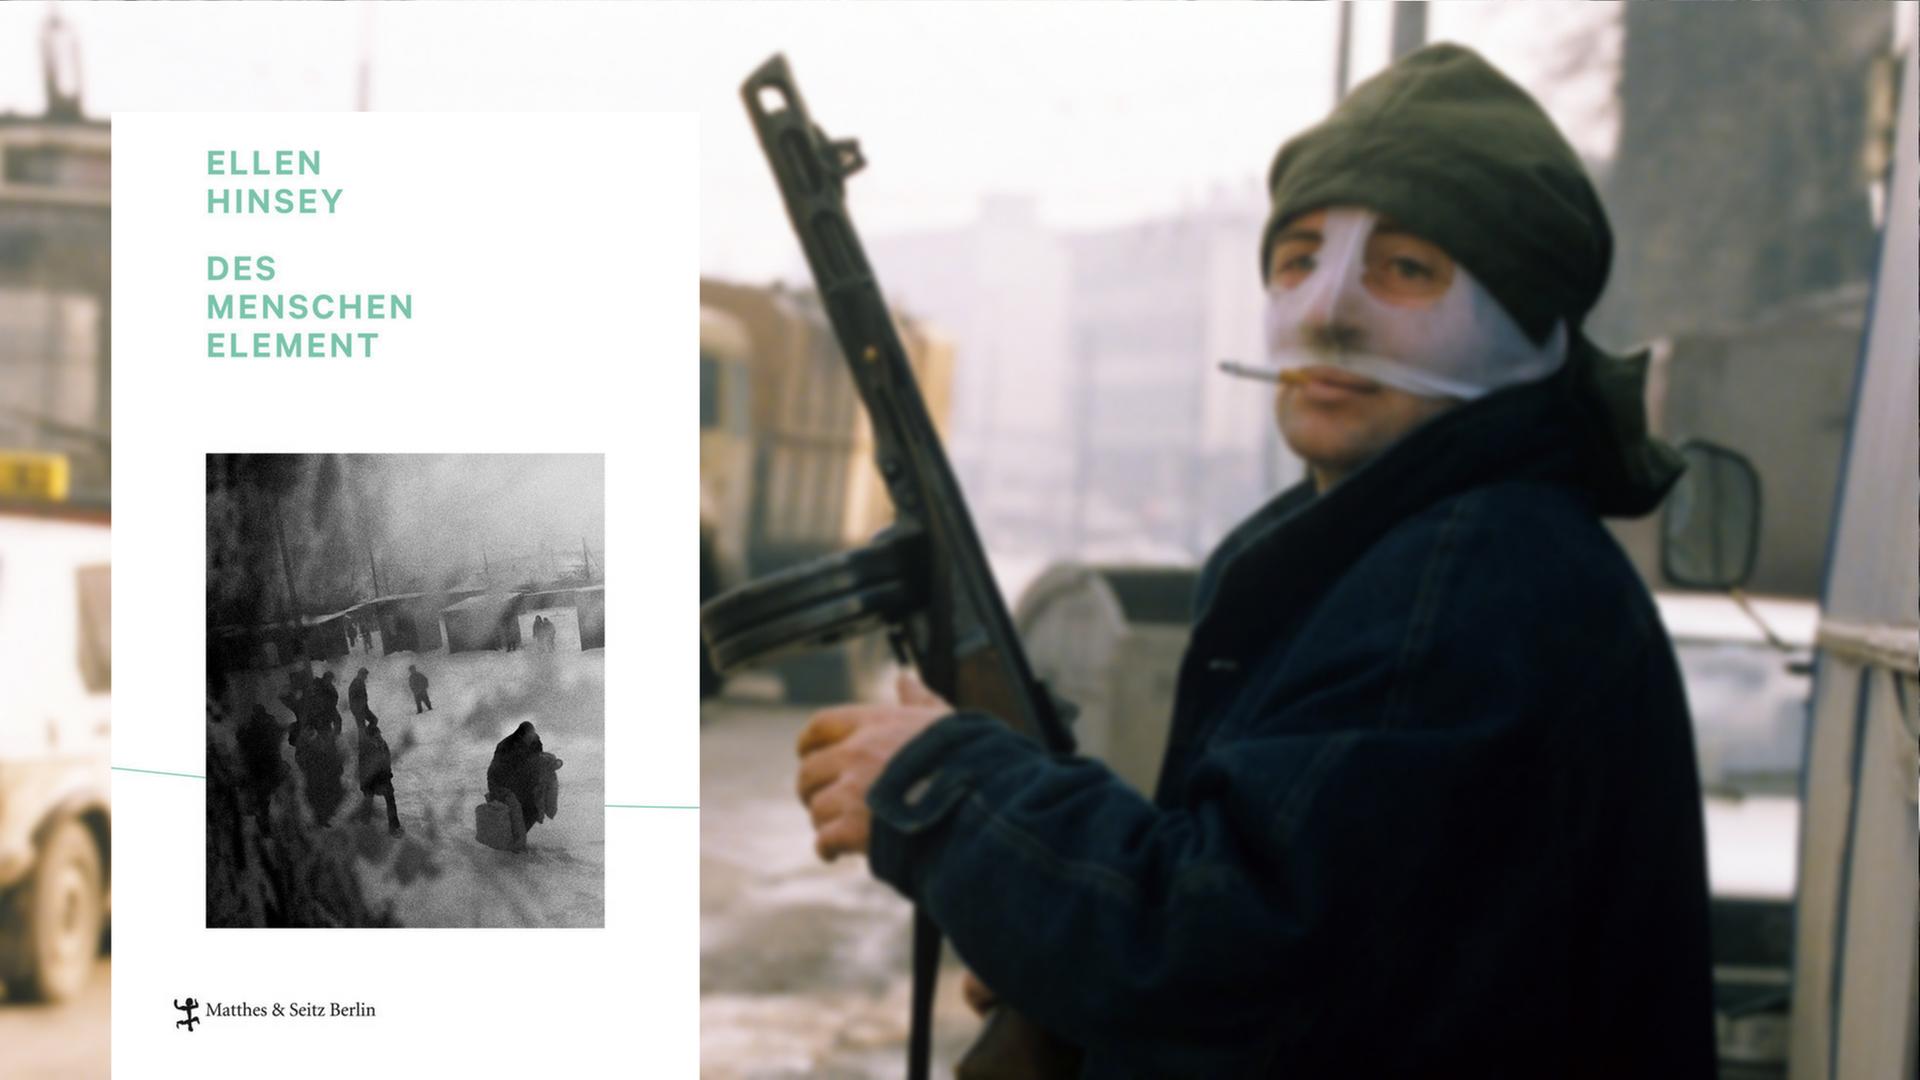 Cover von Ellen Hinsey "Des Menschen Element", im Hintergrund ist ein serbischer Kämpfer aus dem Bosnienkrieg zu sehen